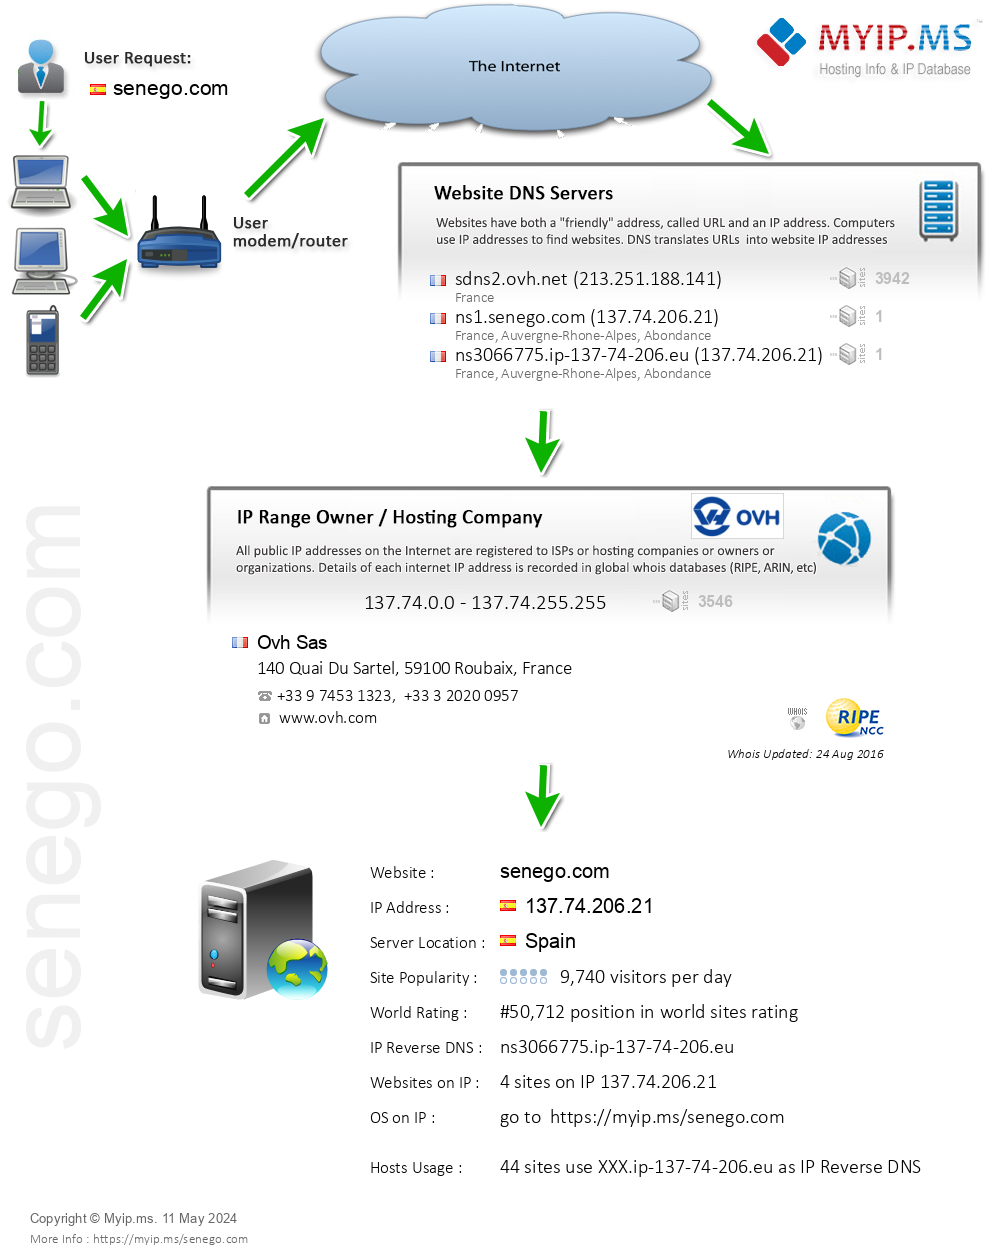 Senego.com - Website Hosting Visual IP Diagram